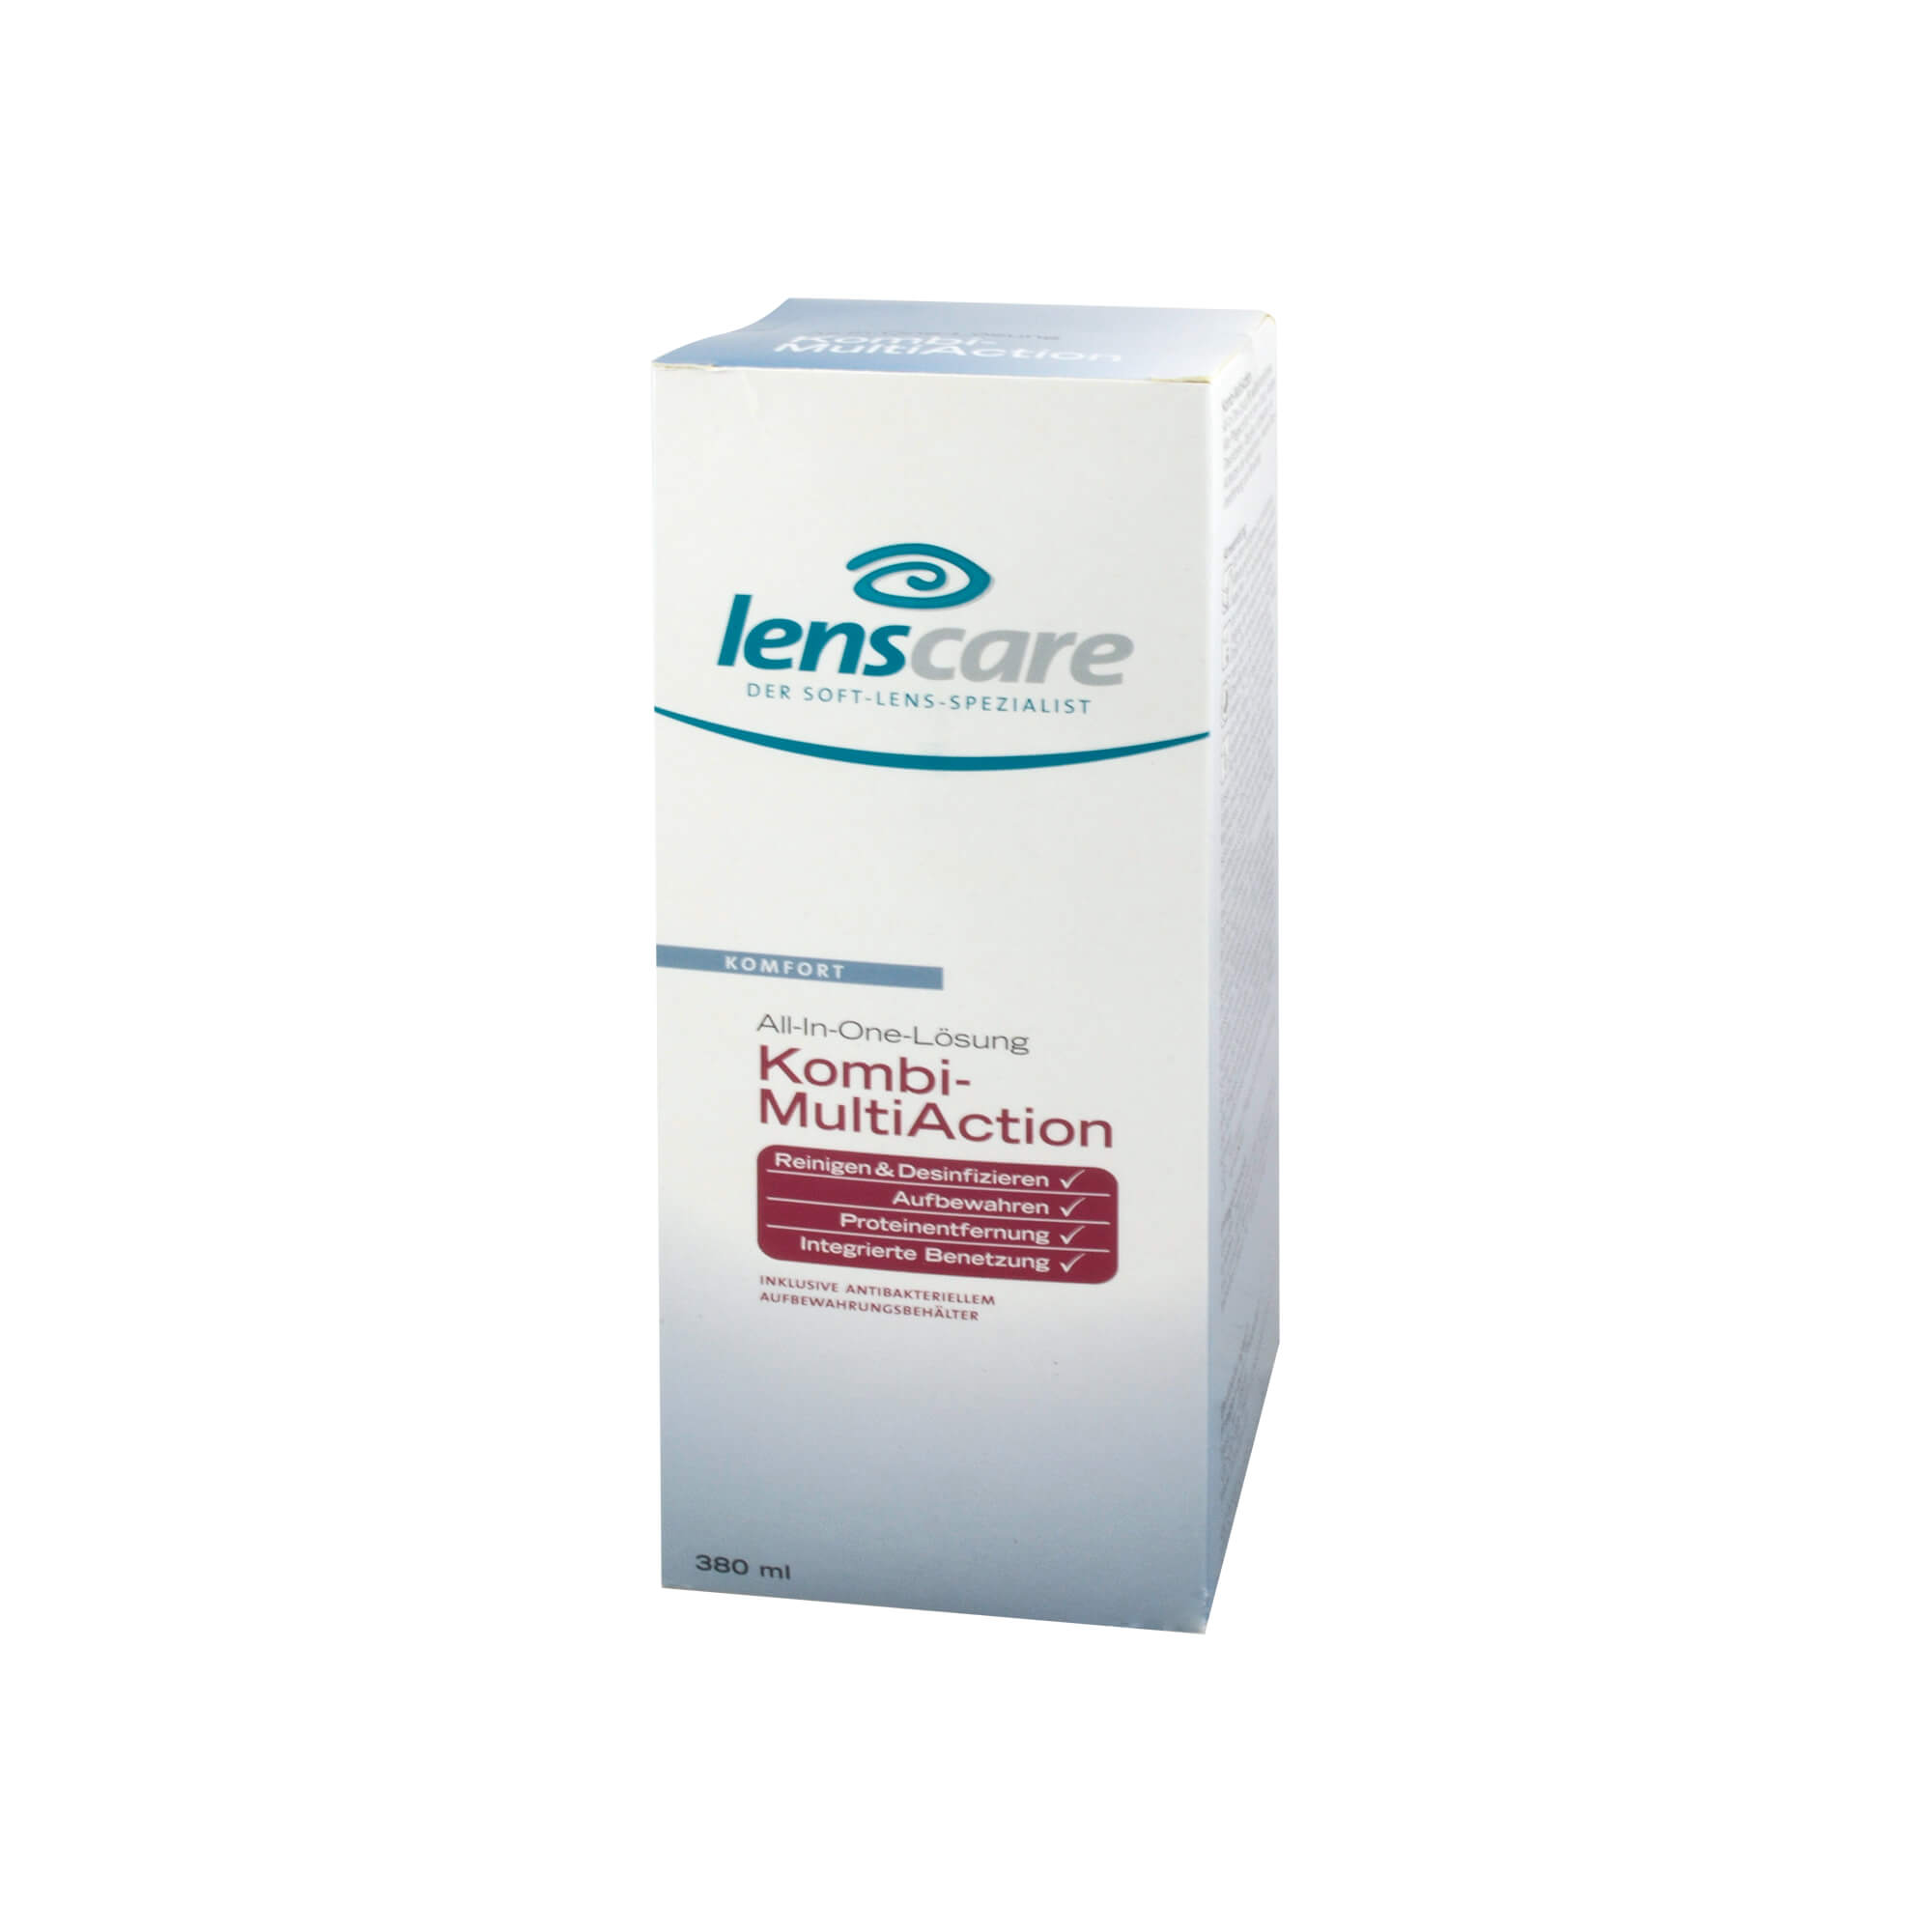 All-In-One-Lösung Kombi-MultiAction inklusive antibakteriellem Aufbewahrungsbehälter.